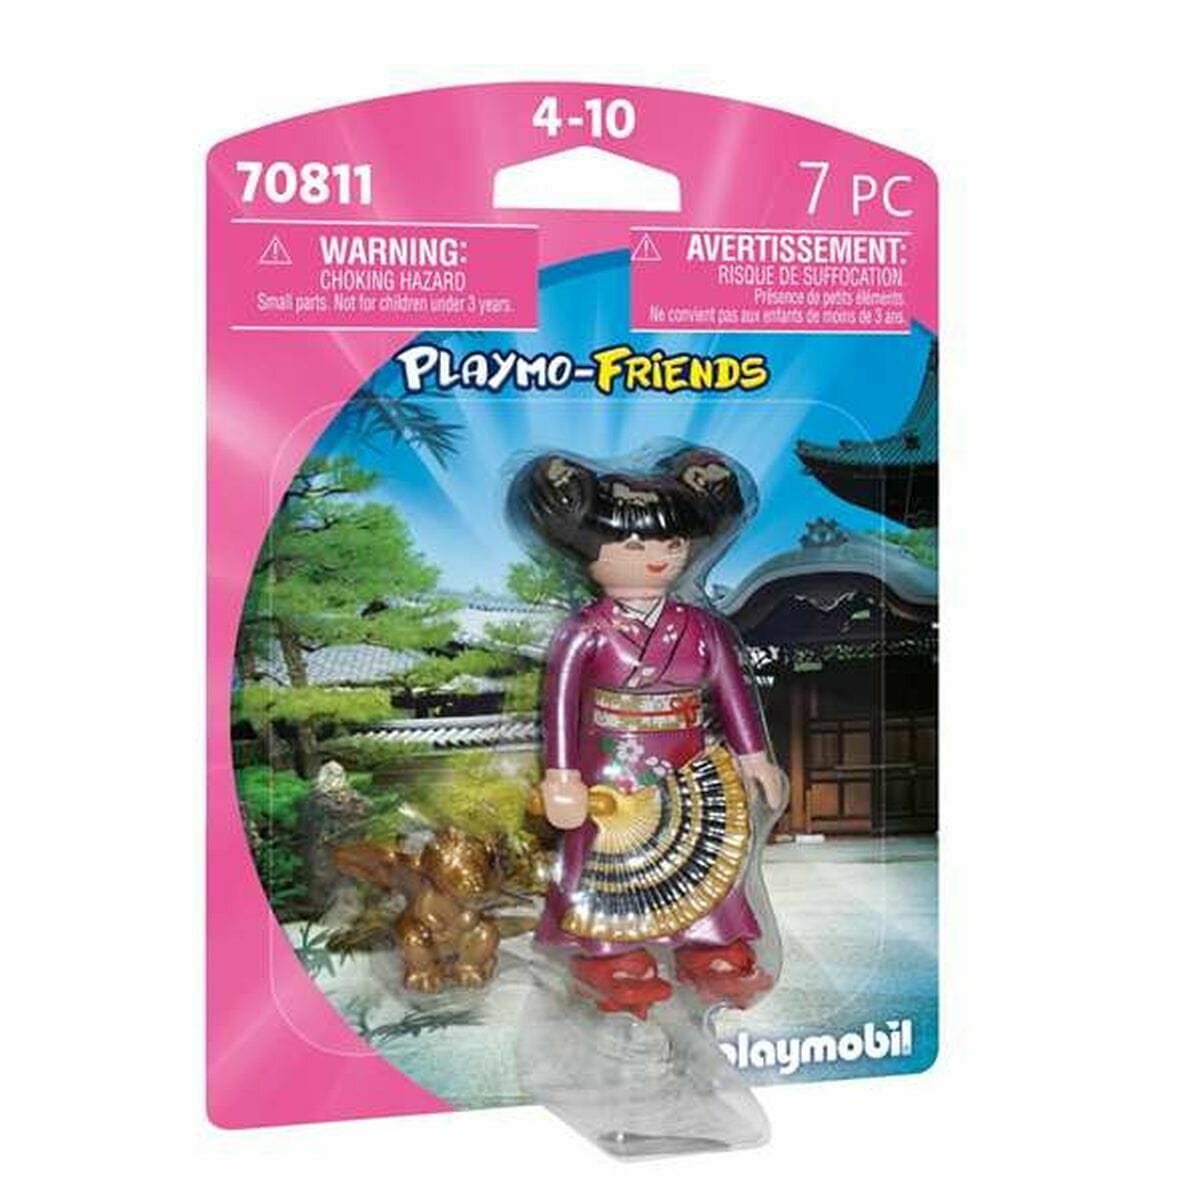 Playmobil Spielzeug | Kostüme > Spielzeug und Spiele > Action-Figuren Figur mit Gelenken Playmobil Playmo-Friends 70811 Japanerin Prinzessin (7 pcs)